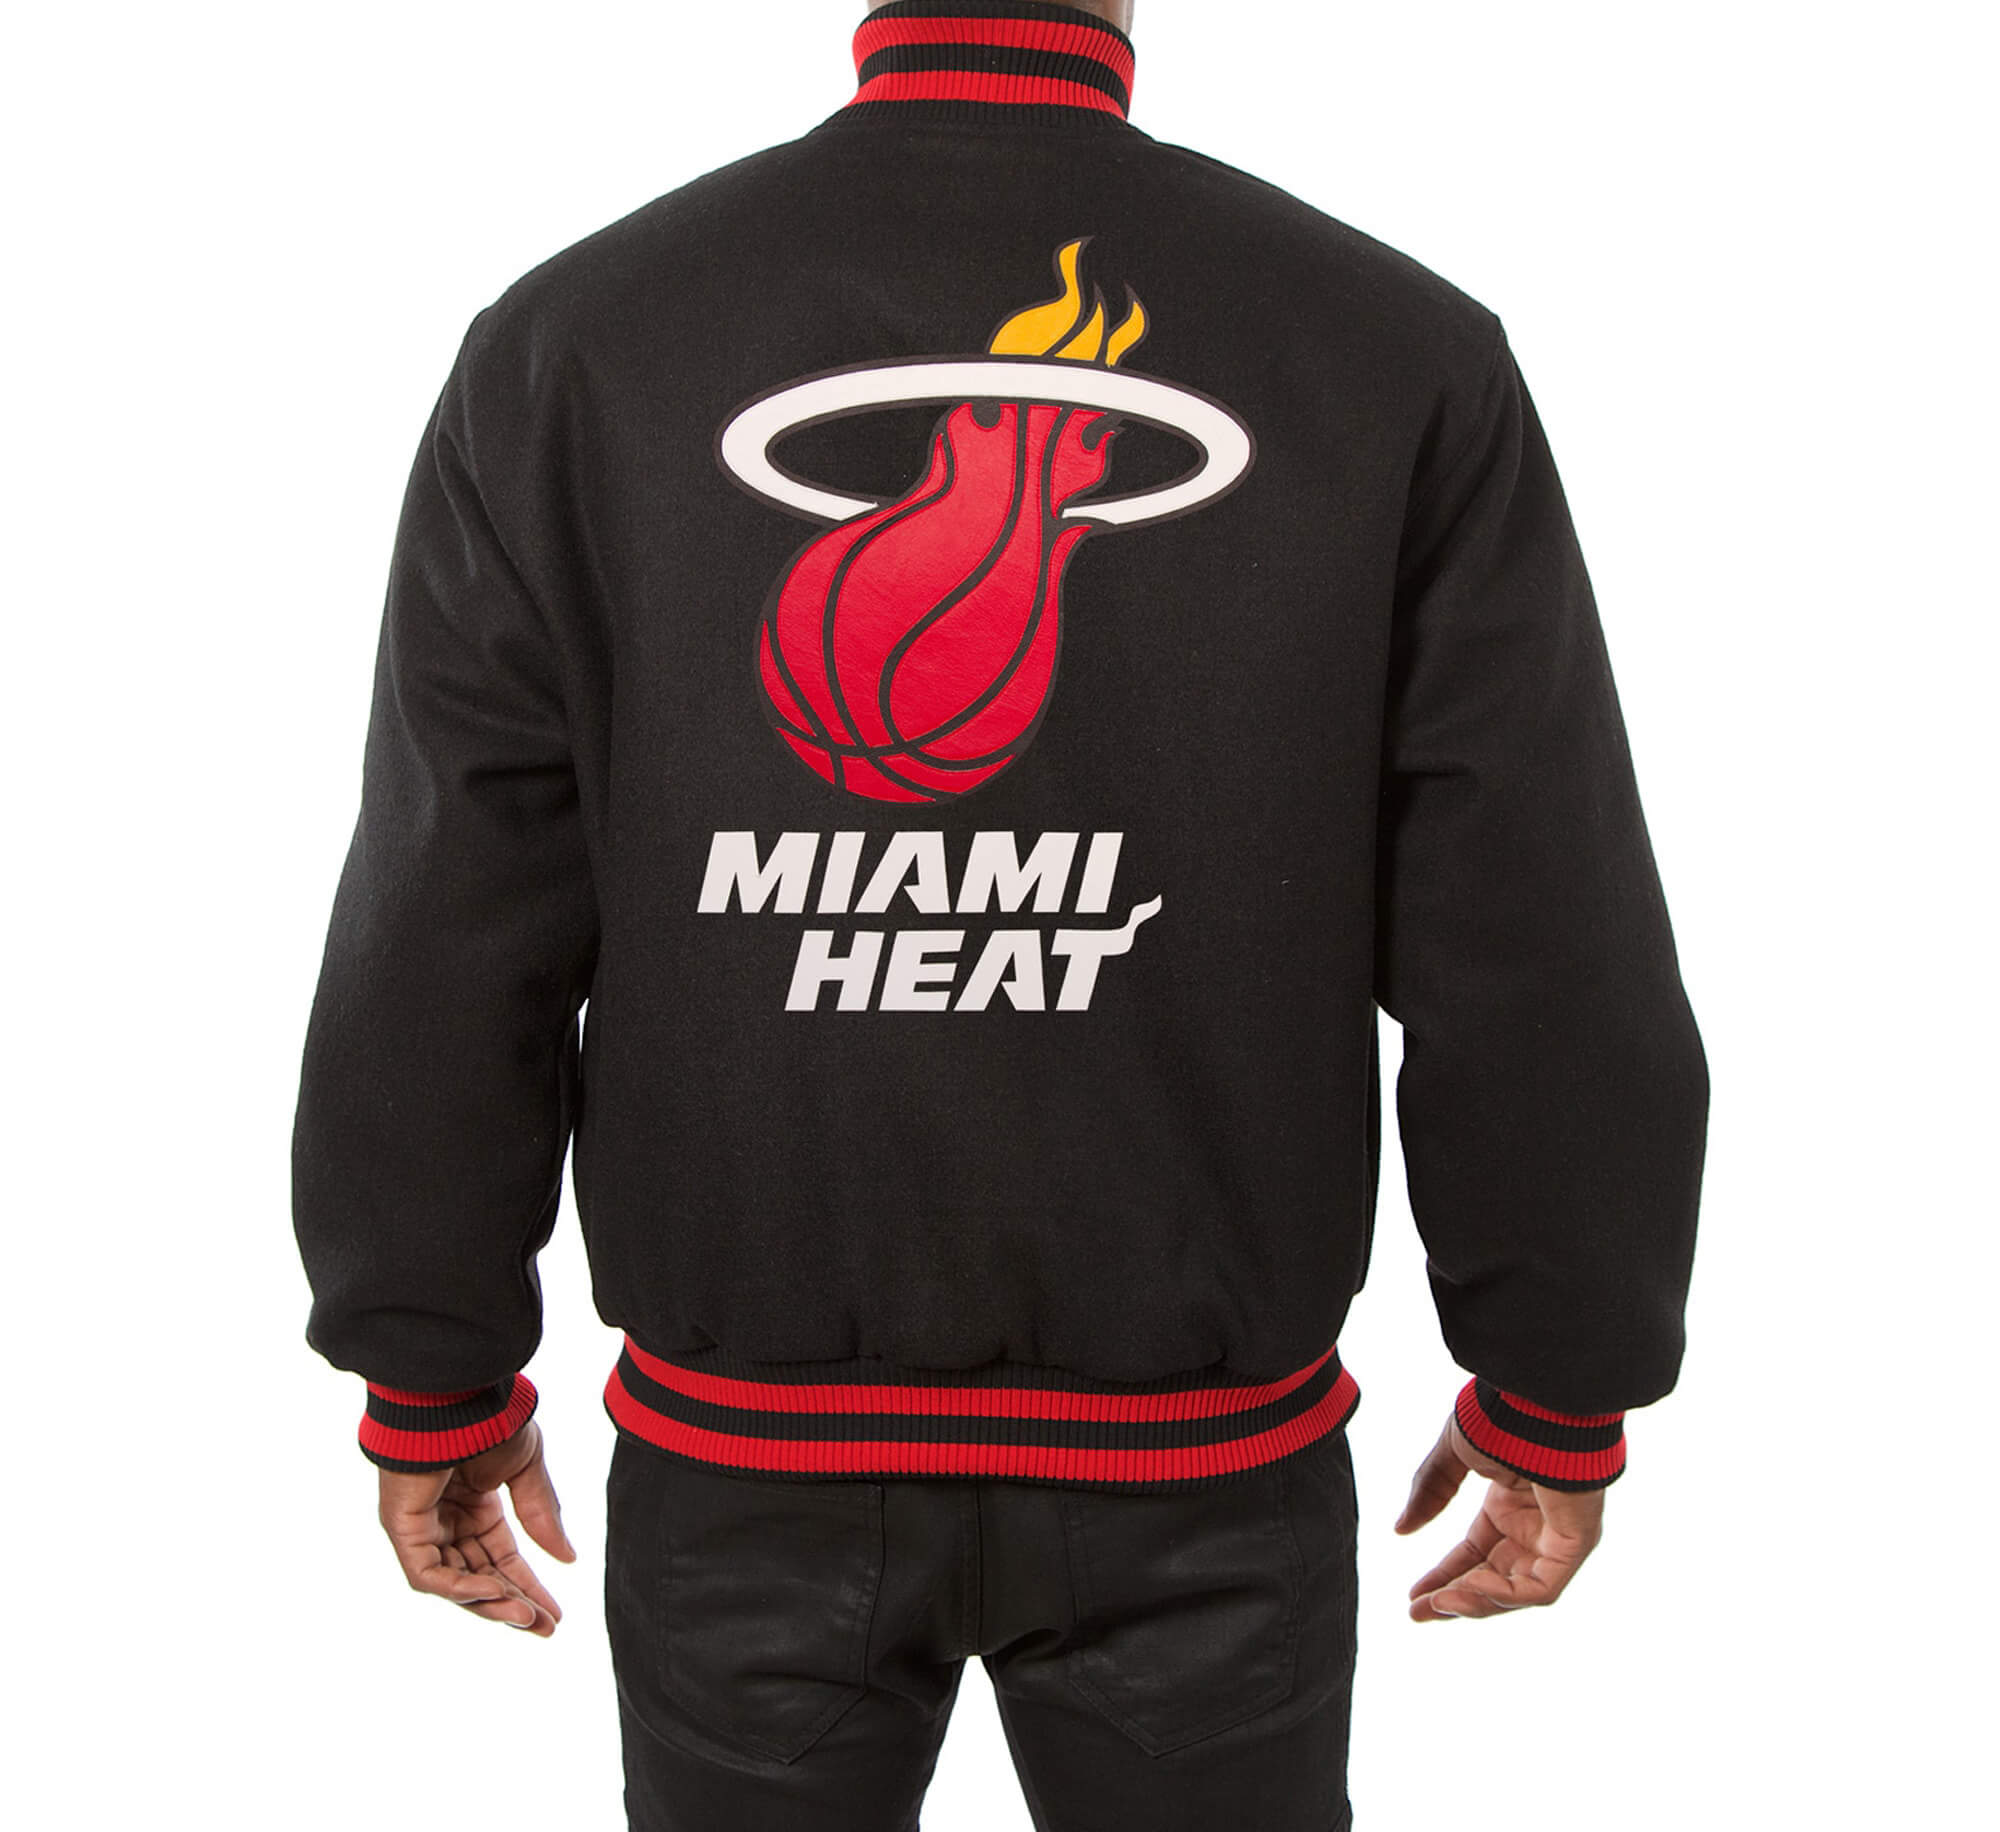 Maker of Jacket NBA Teams Jackets Miami Heat Black Red Jeff Hamilton Satin